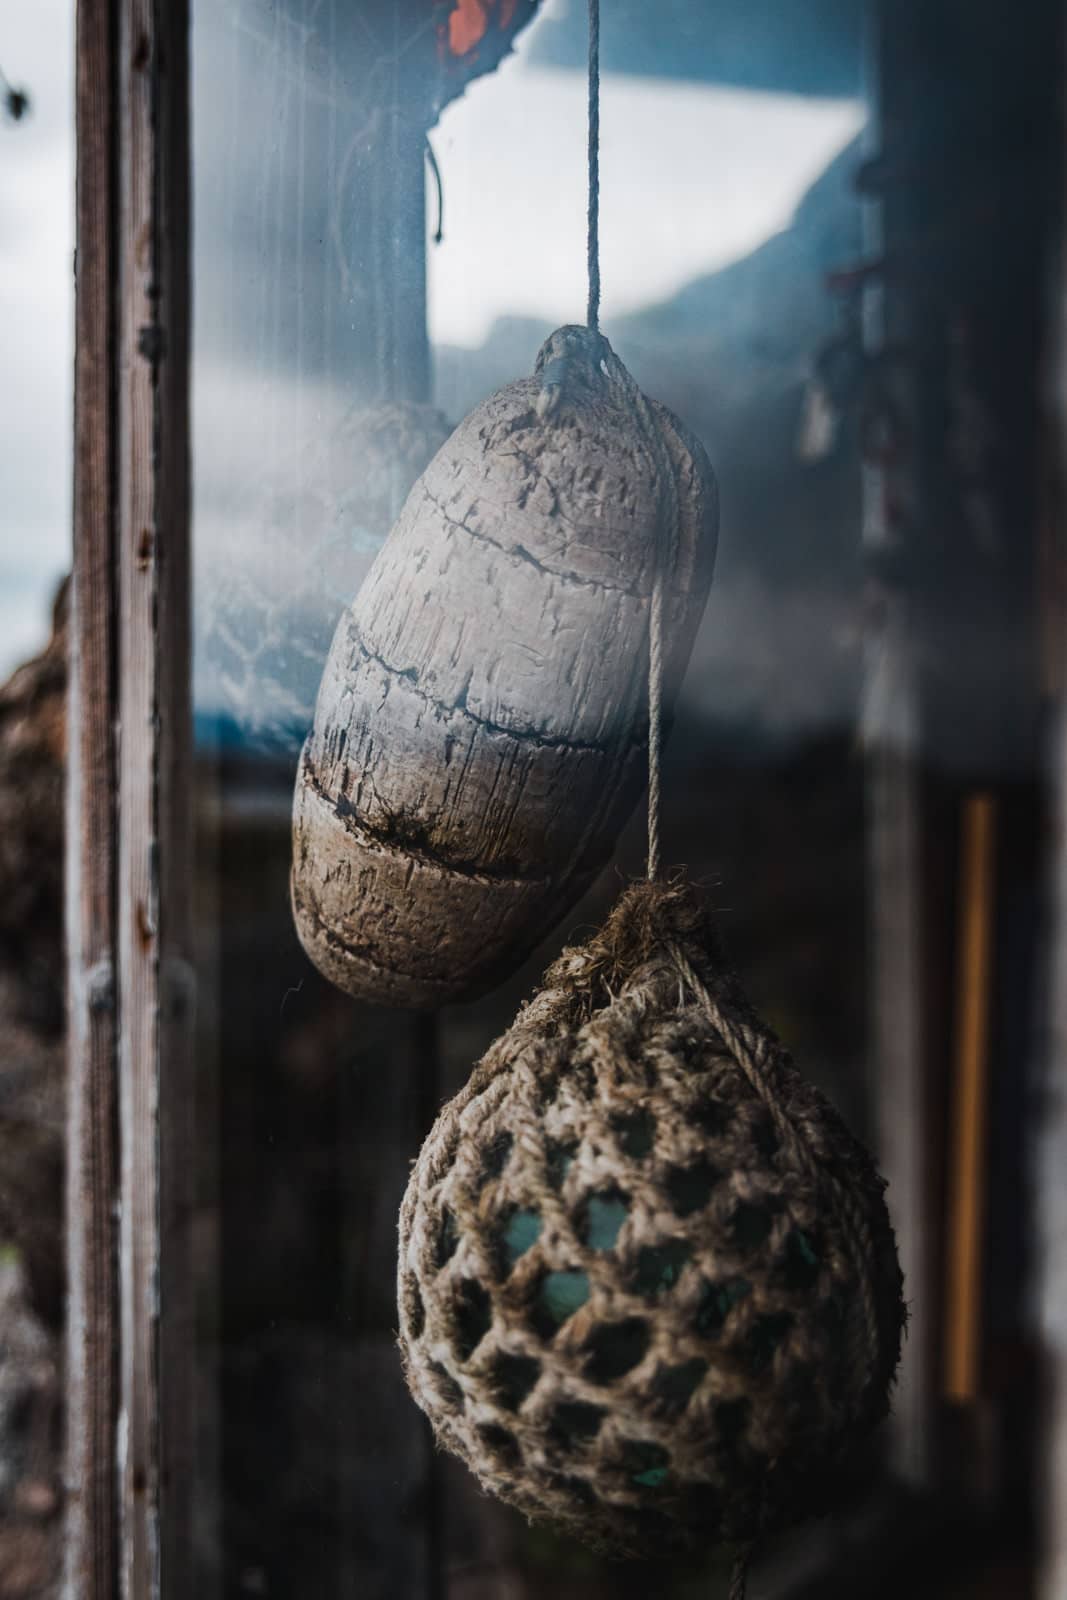 Dekoartikel hängen im Fenster einer alten Strandhütte von Hadseløya in Norwegen